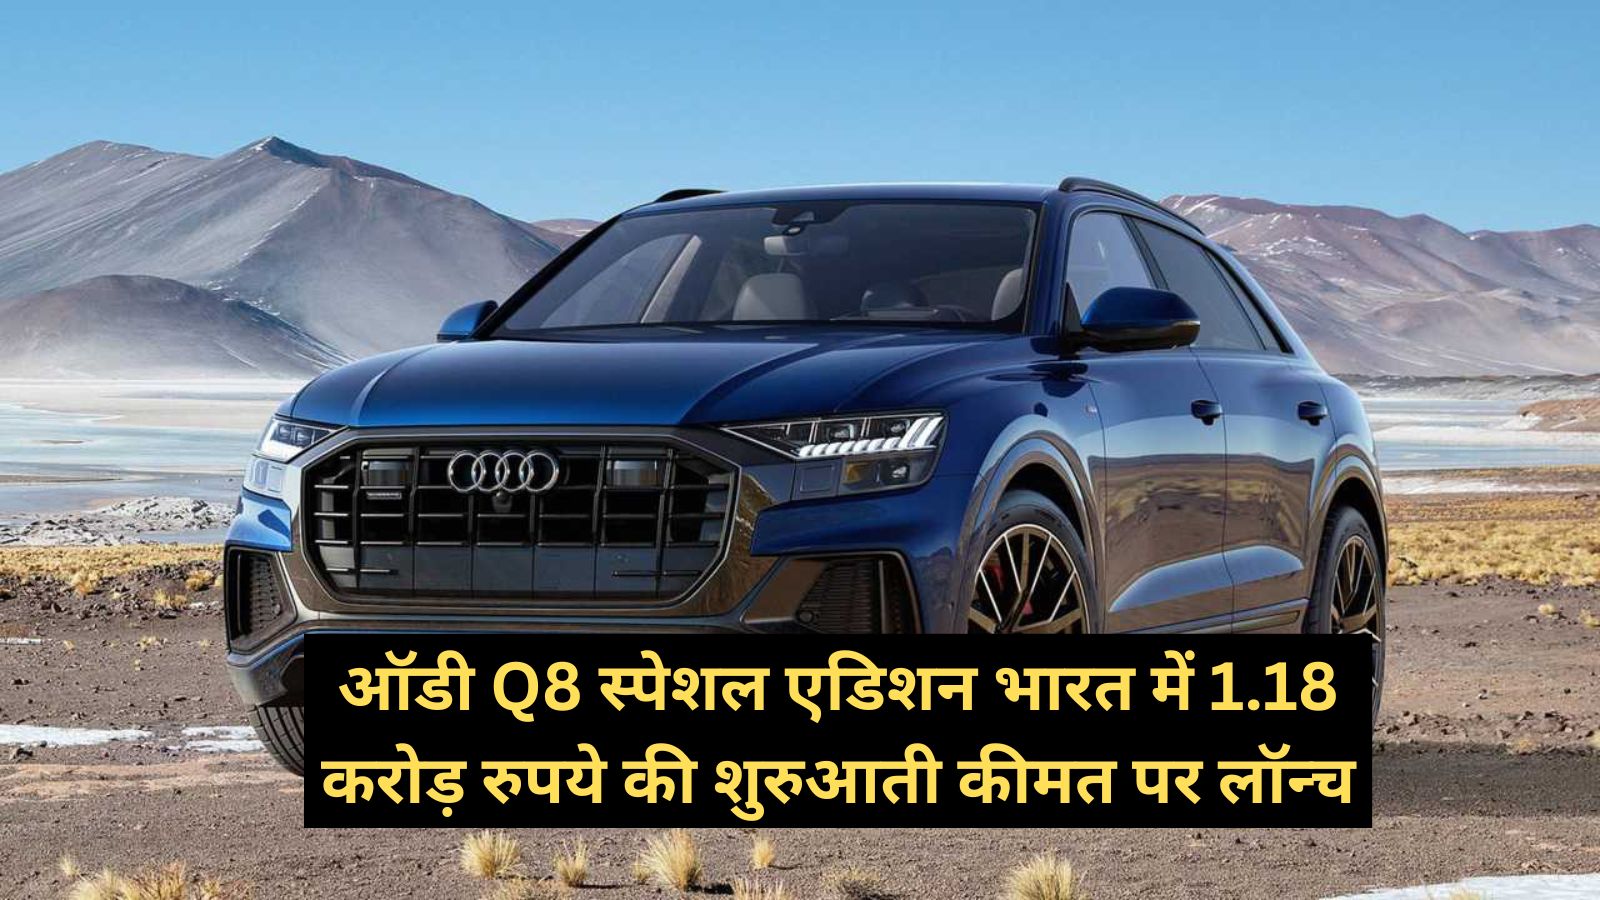 Audi Q8: ऑडी Q8 स्पेशल एडिशन भारत में 1.18 करोड़ रुपये की शुरुआती कीमत पर लॉन्च,जानिए इसके लाजवाब फीचर्स